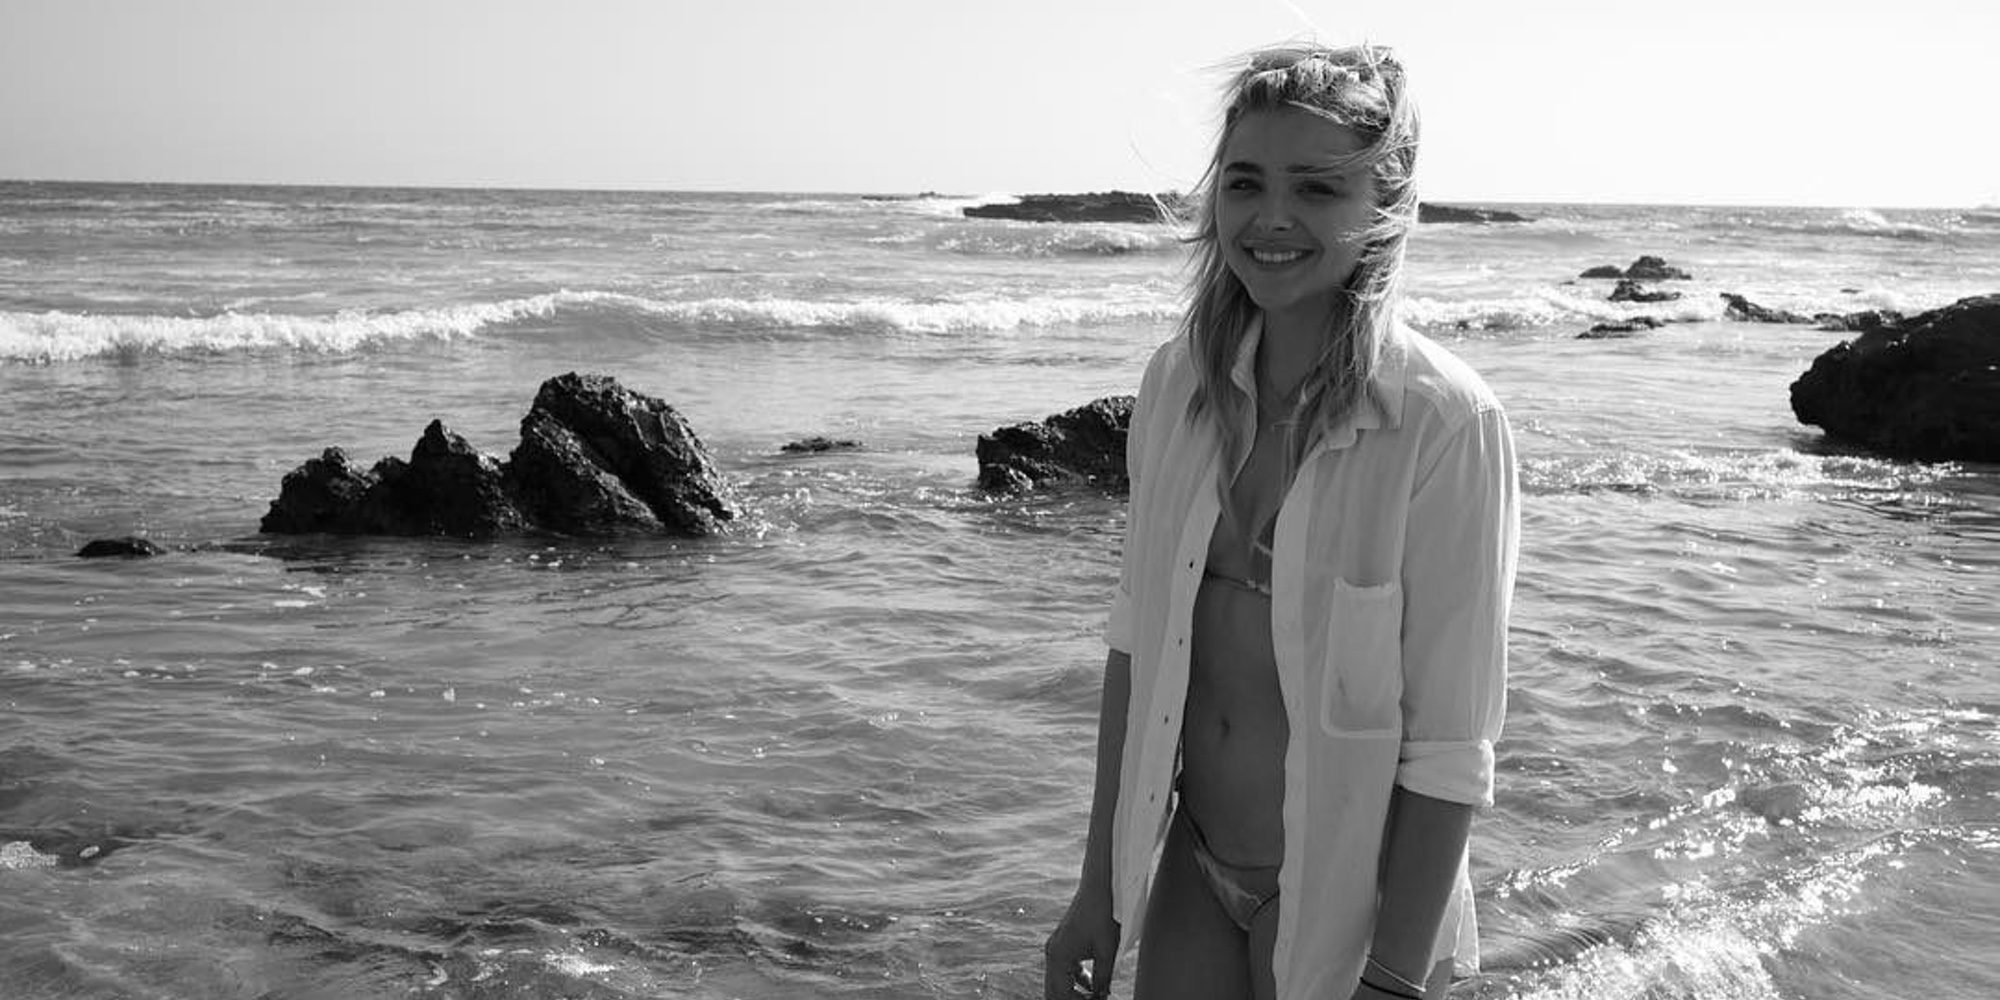 La sugerente imagen de Chloe Grace Moretz en la playa y fotografiada por Brooklyn Beckham